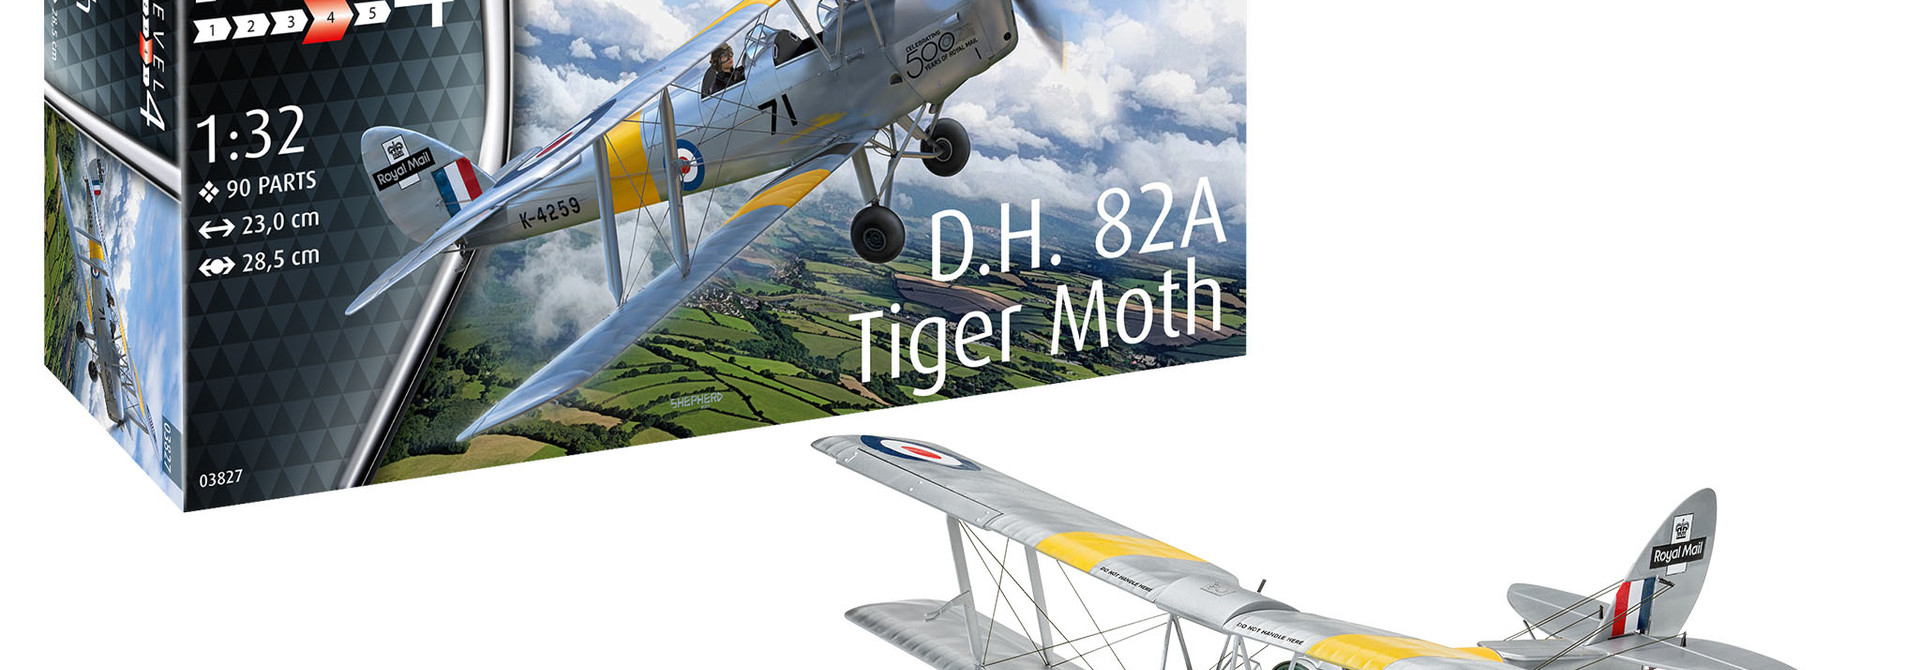 1:32 D.H. 82A Tiger Moth